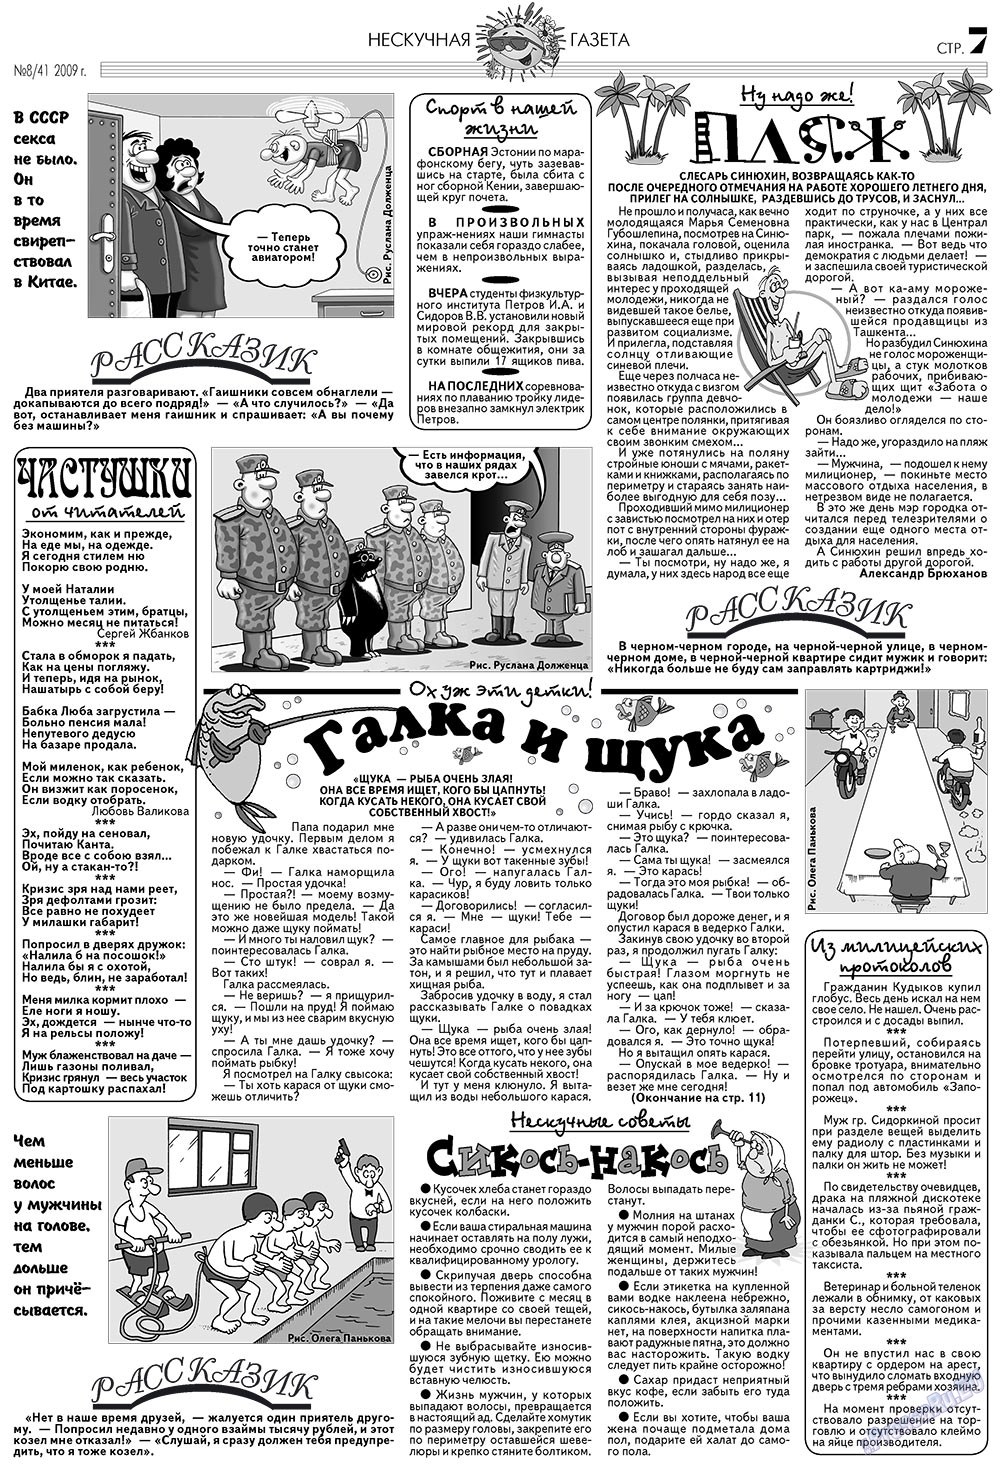 Нескучная газета (журнал). 2009 год, номер 8, стр. 7